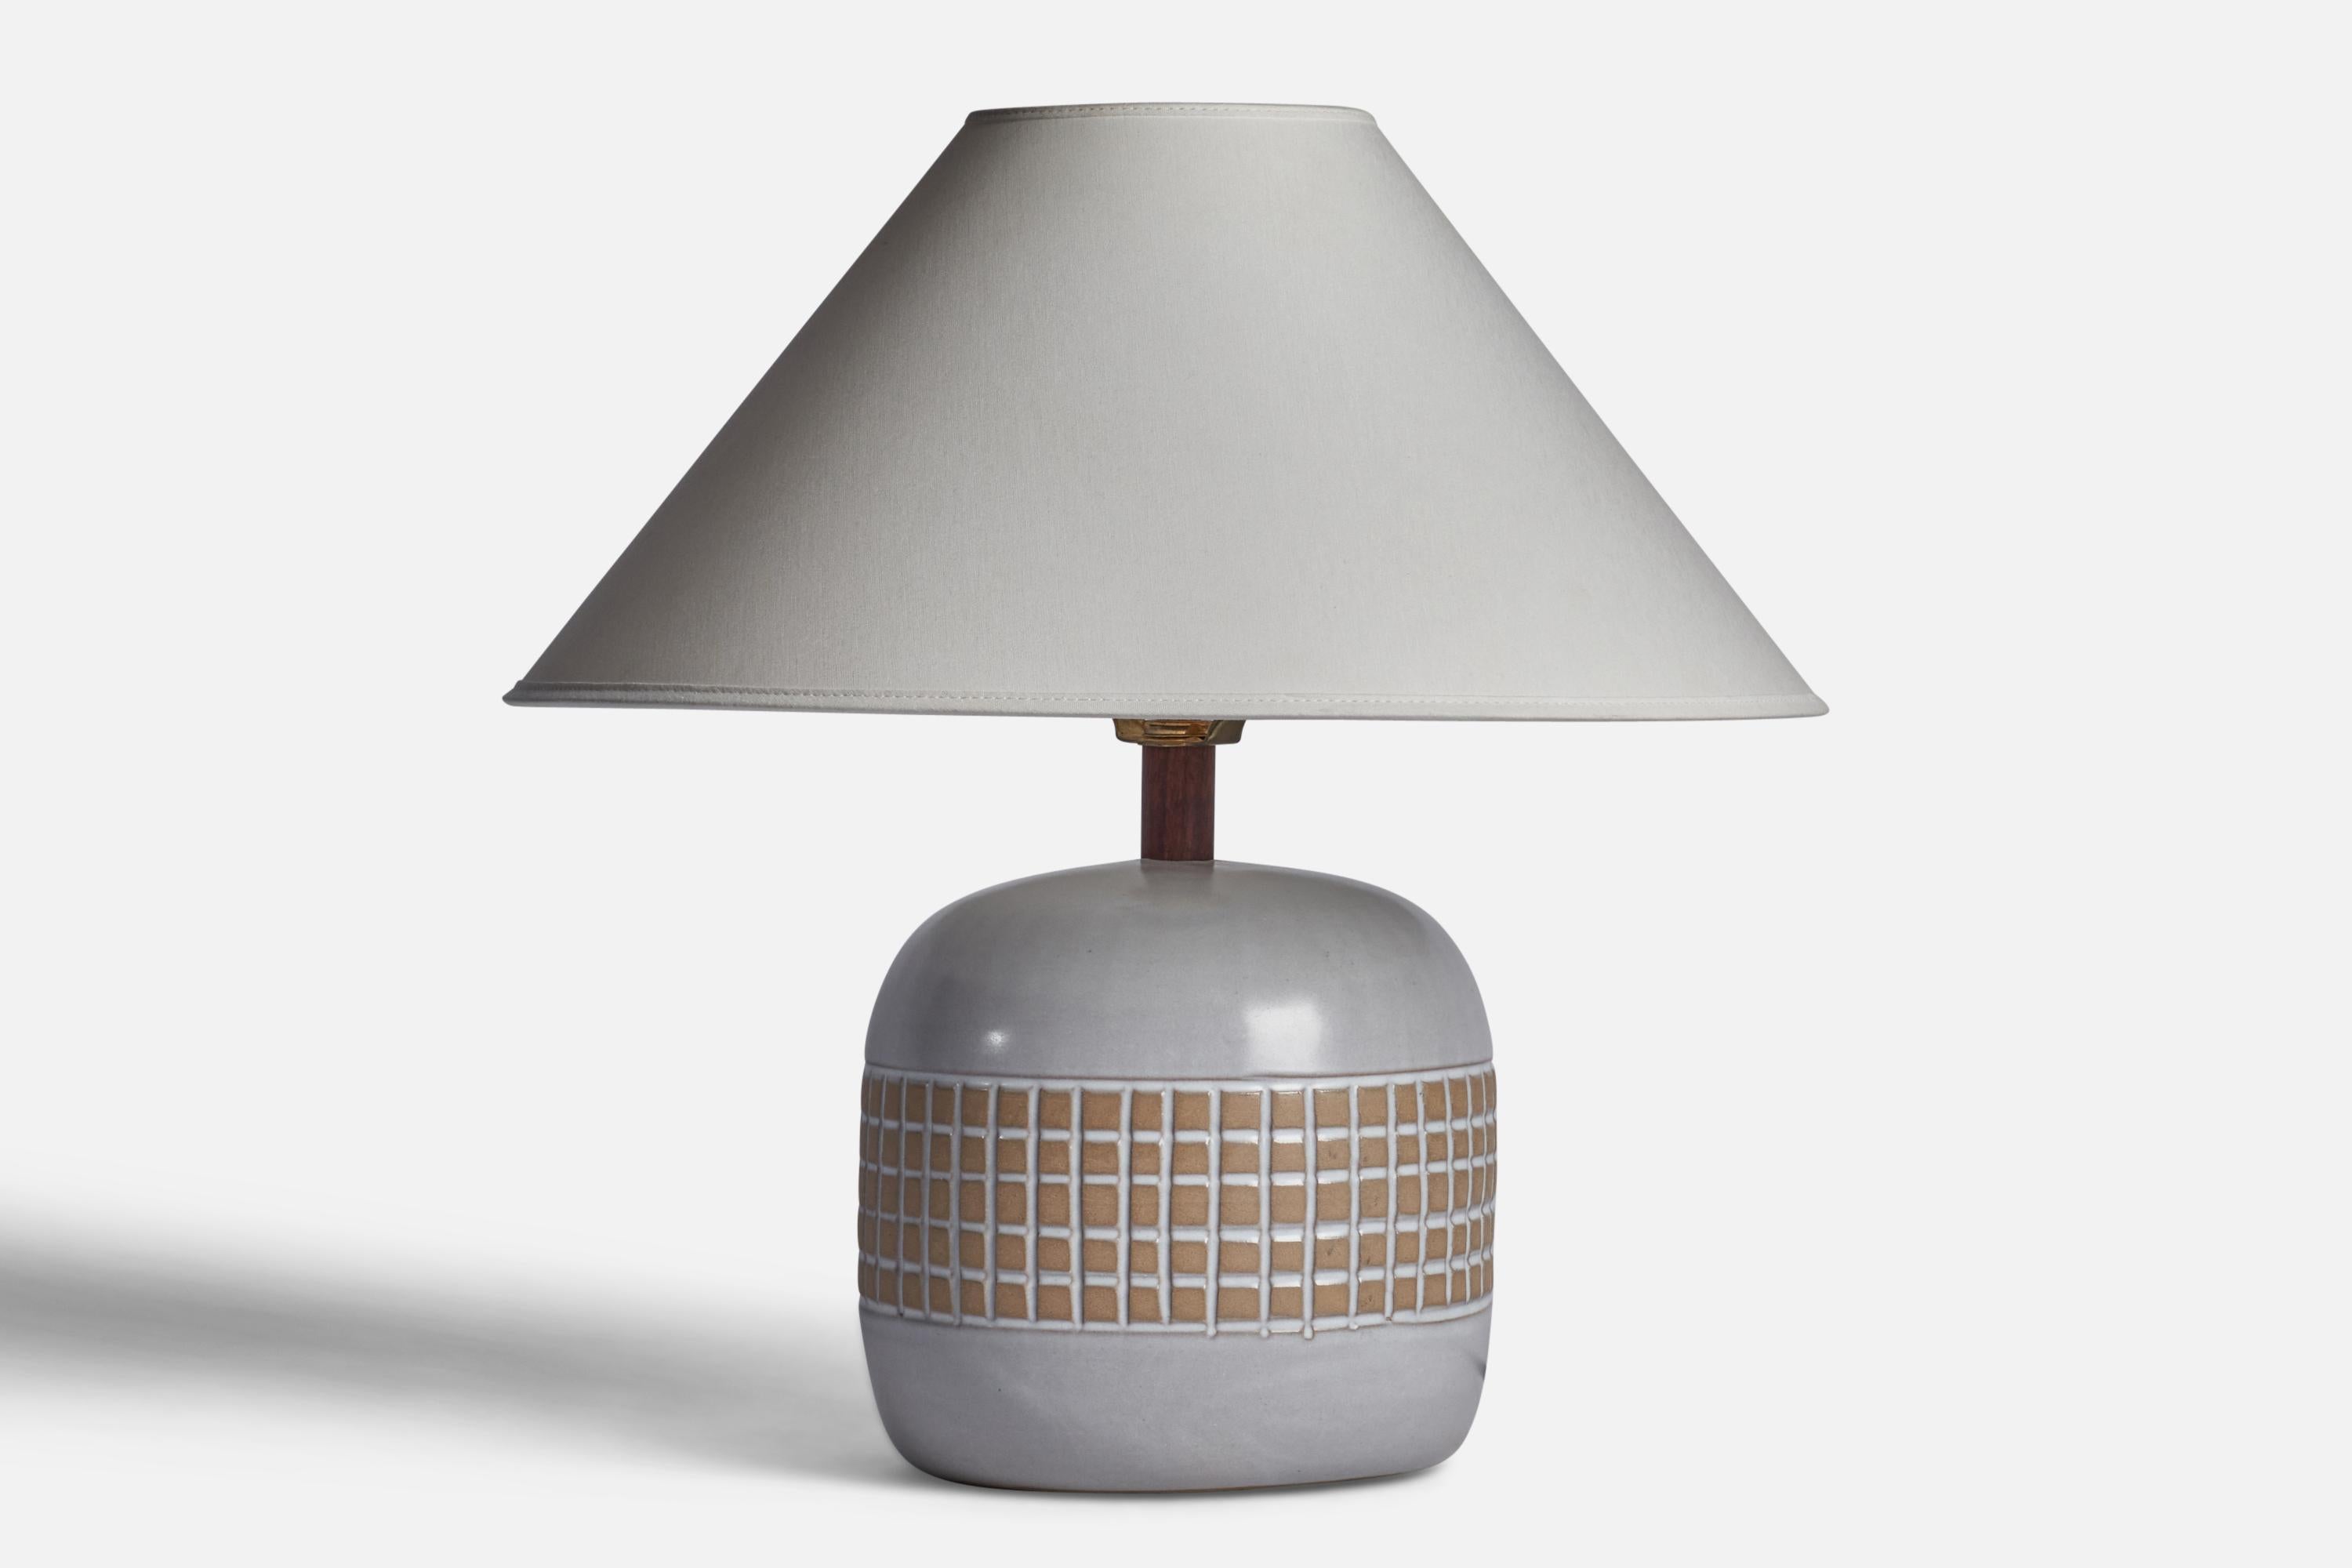 Lampe de table en céramique émaillée gris et beige et lampe en noyer conçues par Jane & Gordon Martz et produites par Marshall Studios, États-Unis, années 1960.

Dimensions de la lampe (pouces) : 12.25